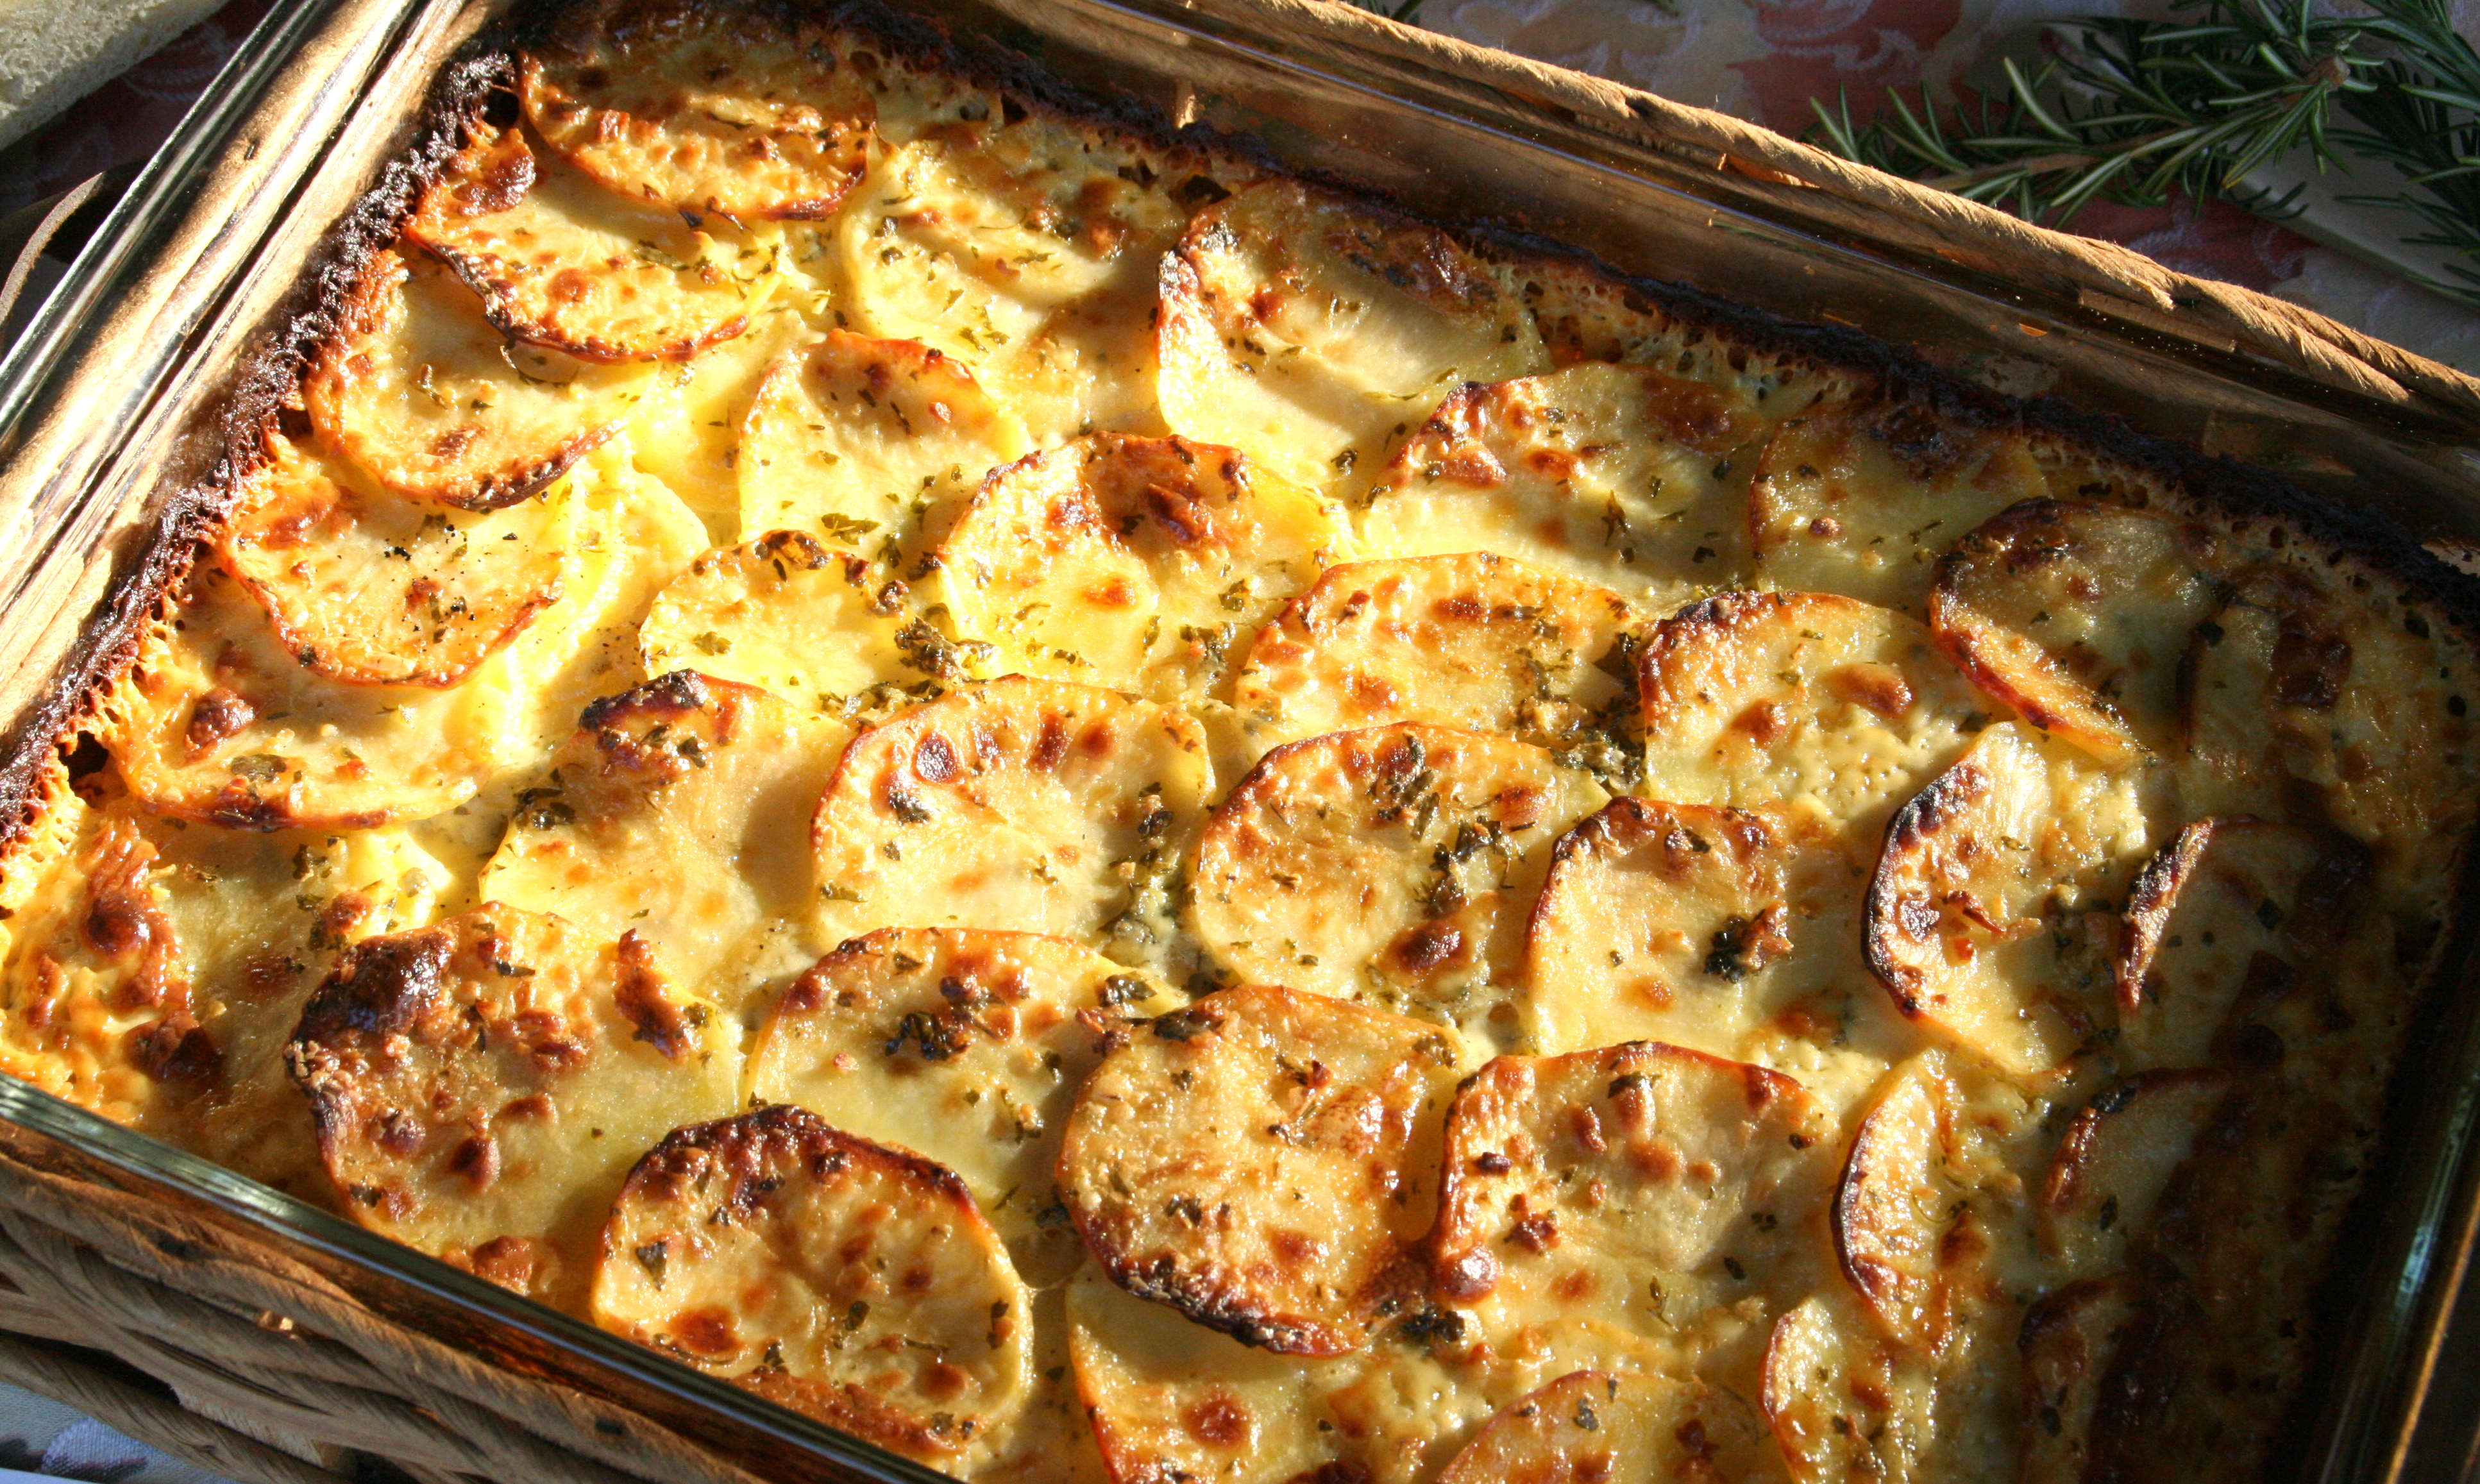 Garlic and Herb Potato Gratin layered in a casserole dish